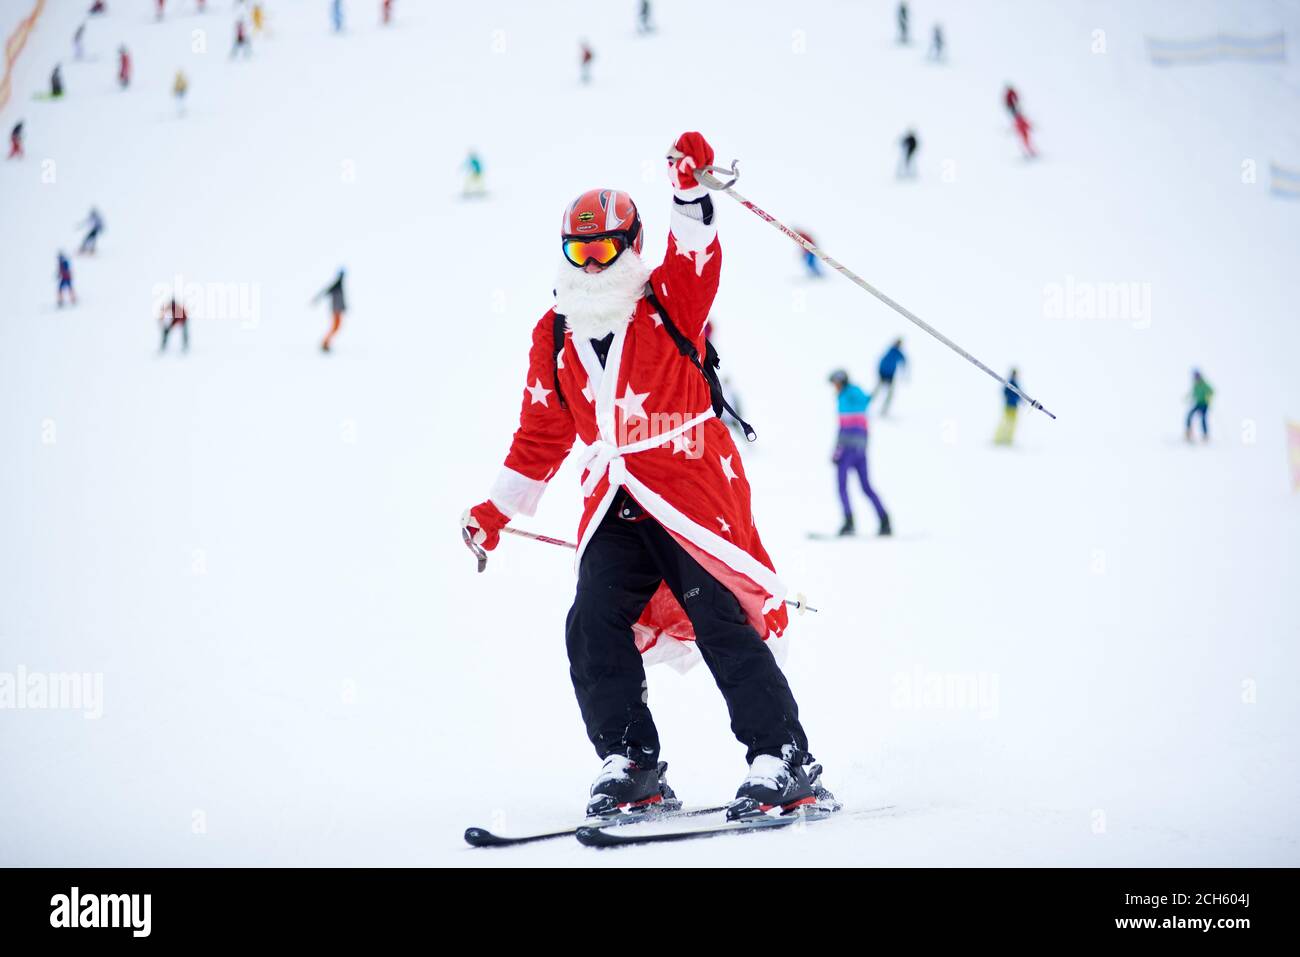 Bukovel, Ukraine - 09. Dezember 2018: Skifahrerin im Weihnachtsmann-Kostüm mit weißem Bart in Schutzbrille und Helm, auf schneebedeckter, hoch gewachsener Piste mit Skistick abwärts und die Hand nach oben Stockfoto